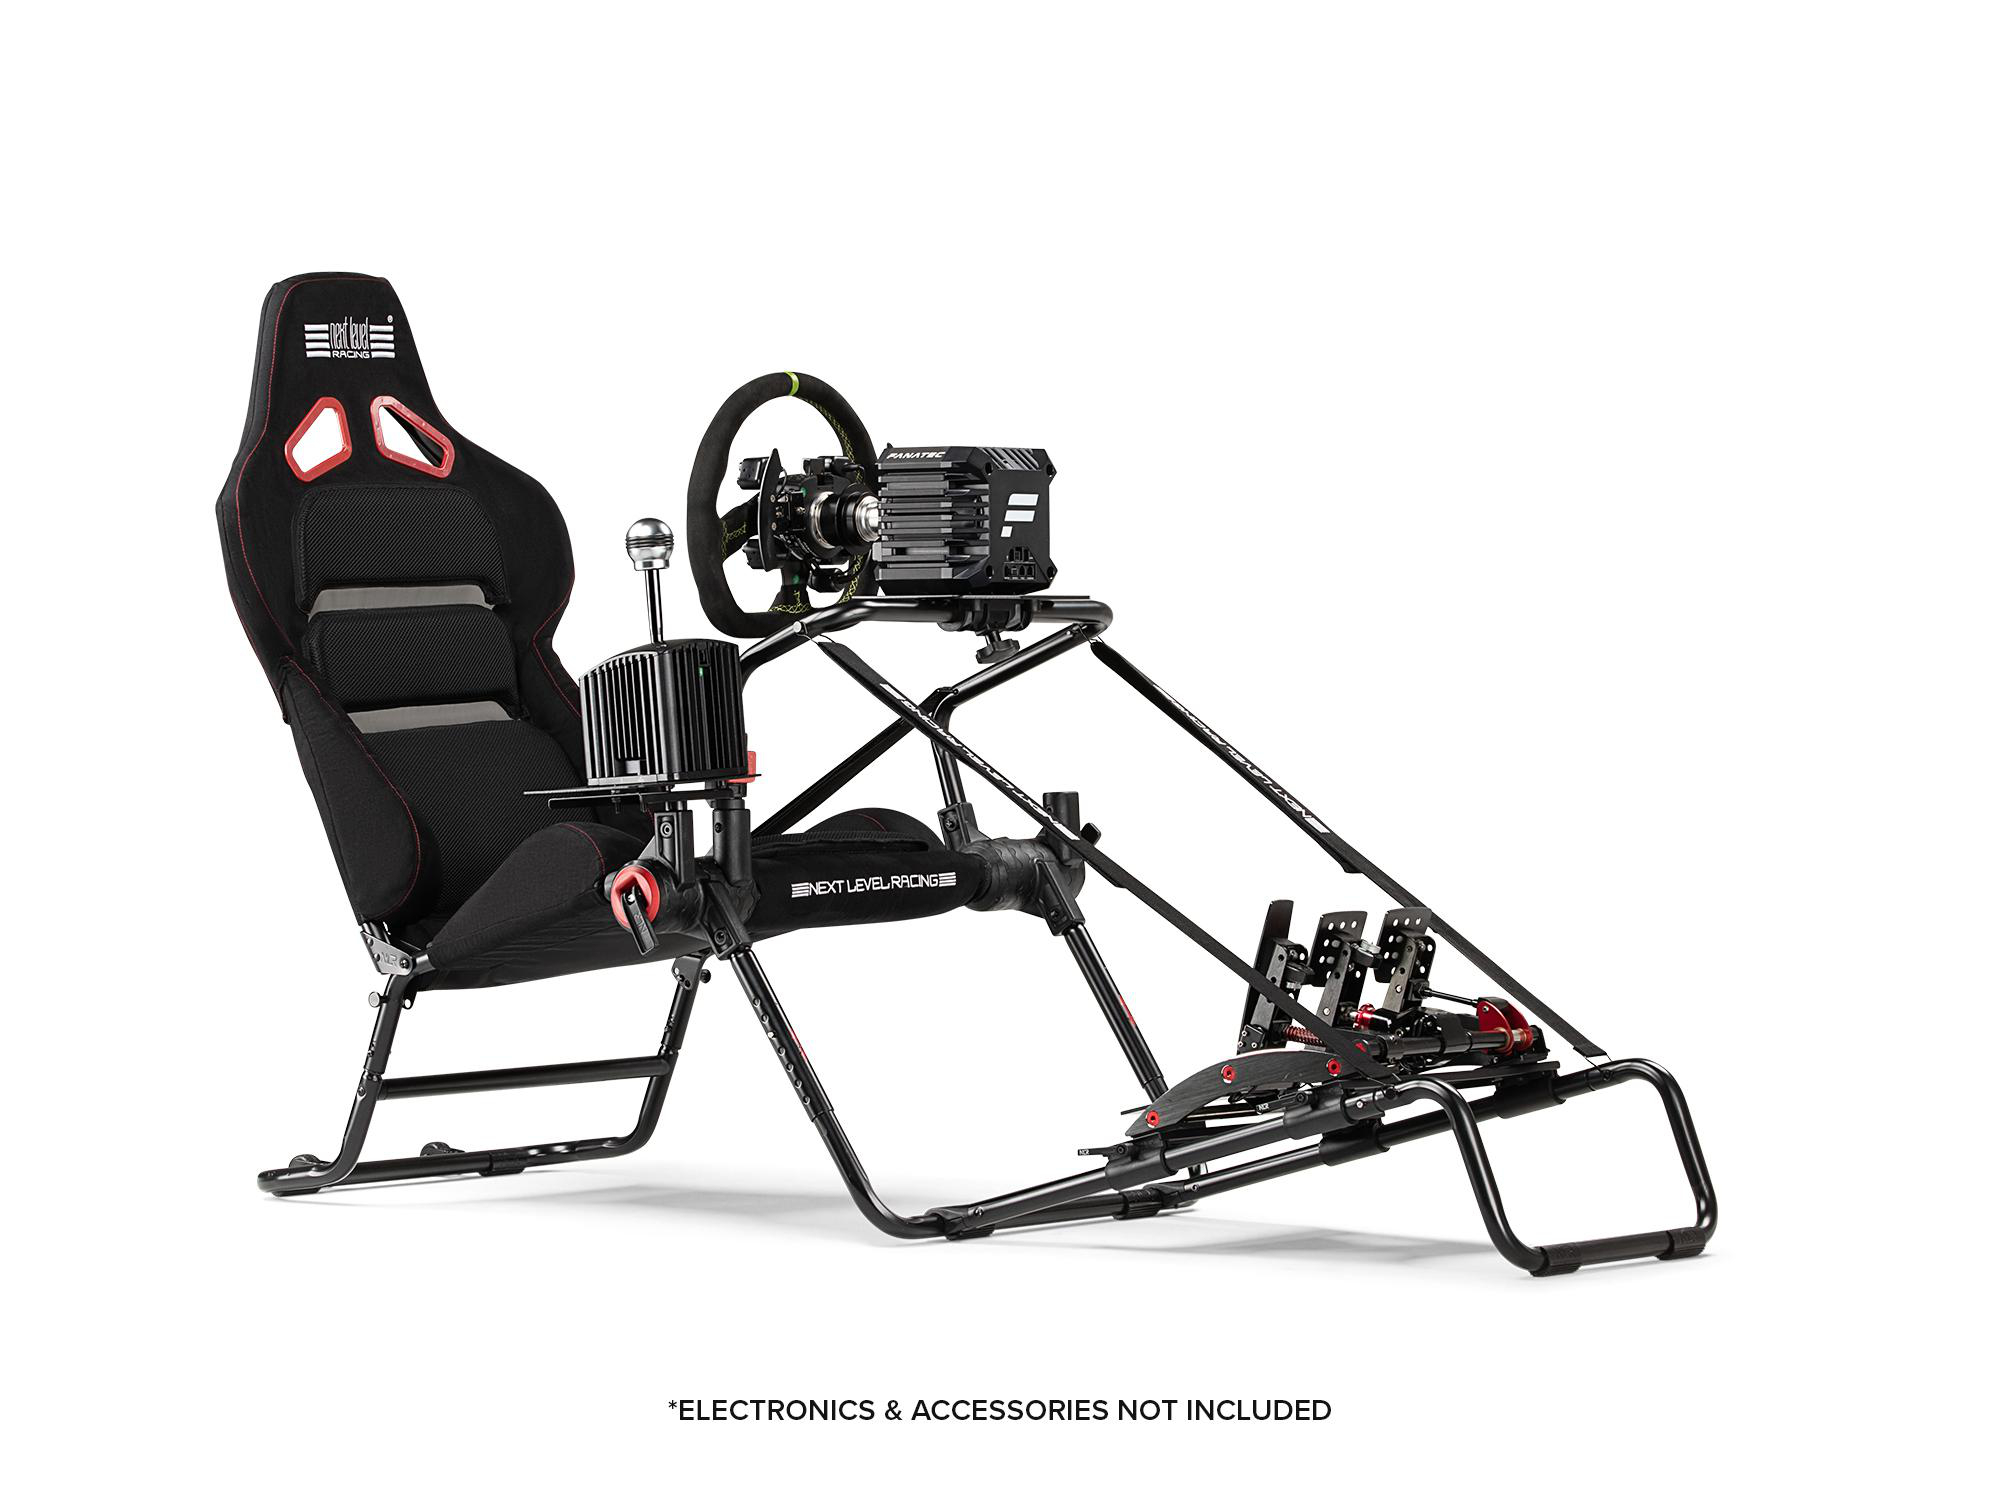 NEXT LEVEL RACING GTLite Pro, im perfekte jedem zusammenklappbare Ästhetik Sim-Racer auch Robustheit Renncockpit das bietet sowohl GT-Stil, das als